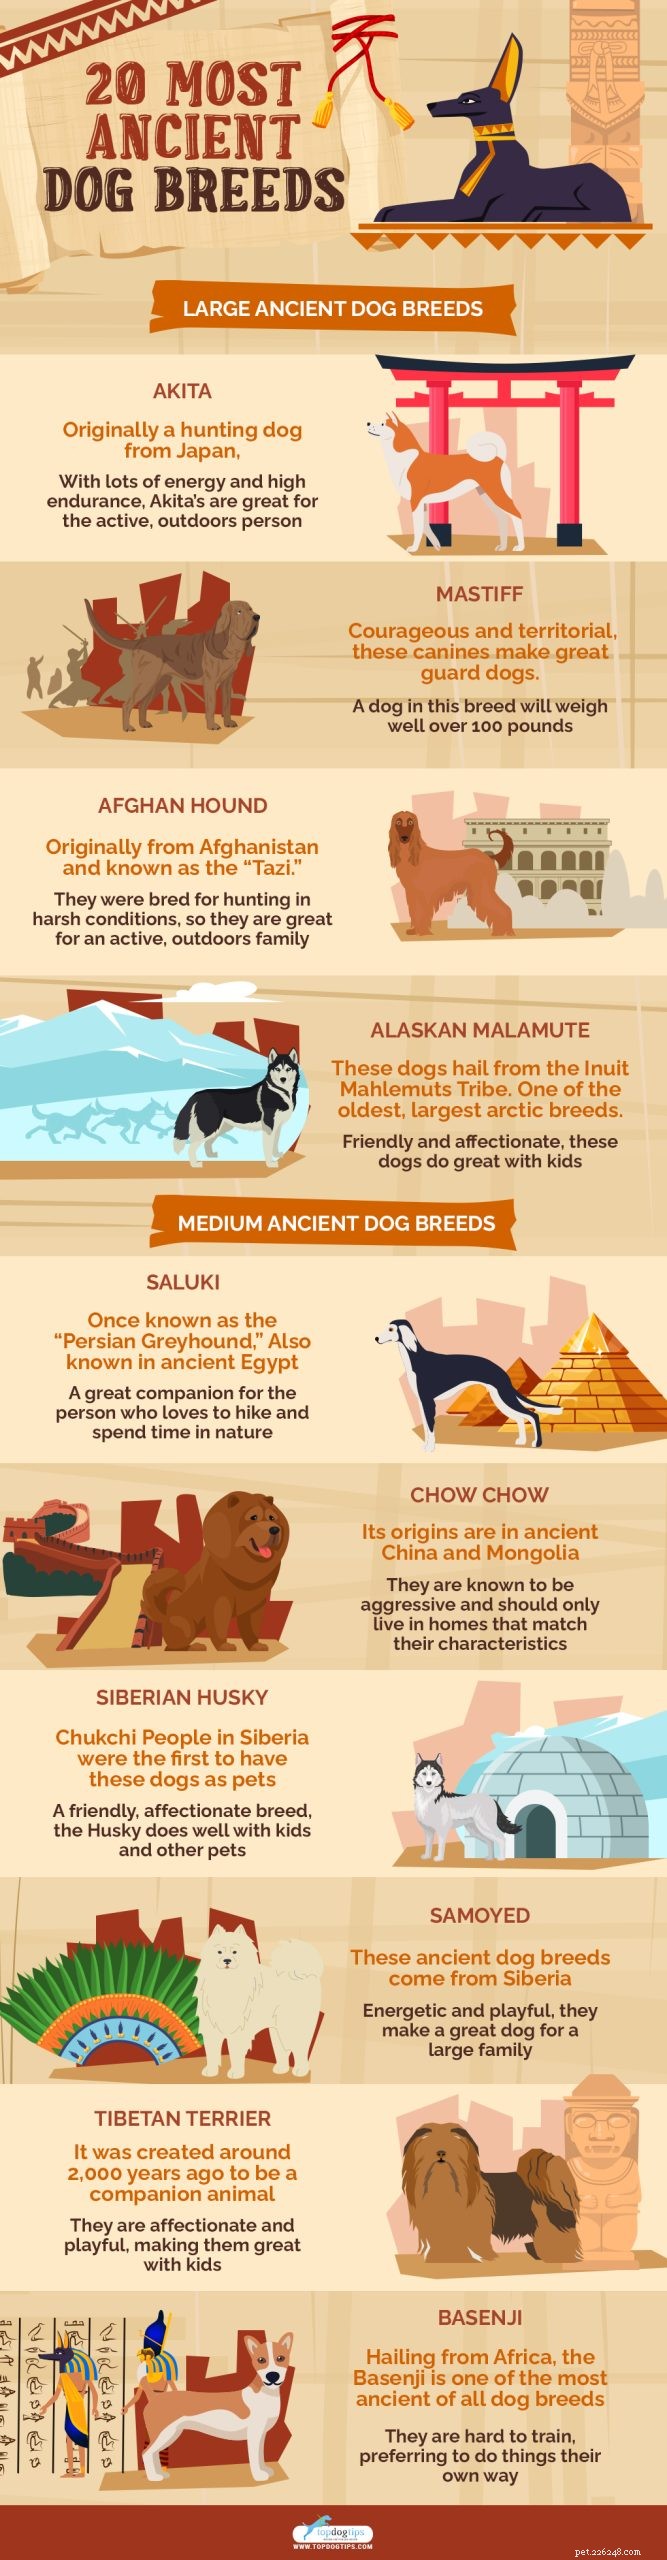 20 nejstarších psích plemen